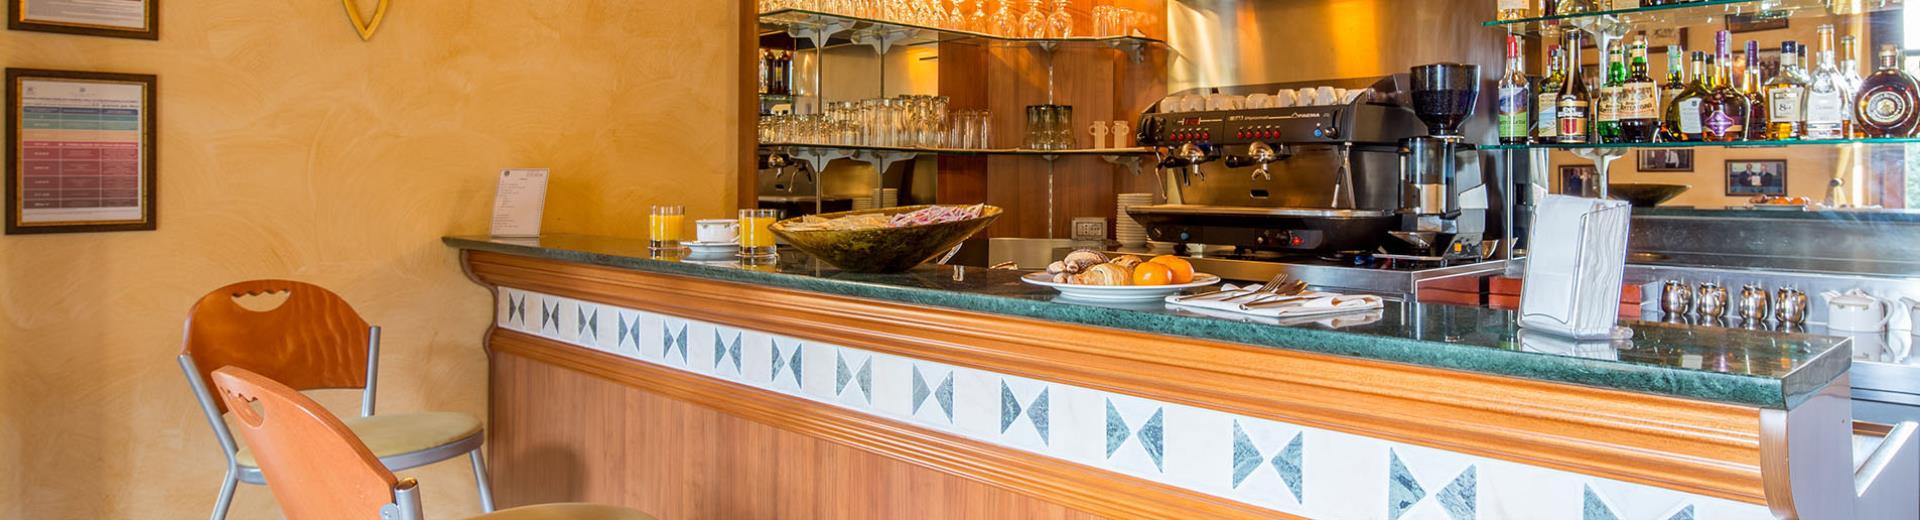 El Lounge Bar del Best Western Plus Hotel le Rondini, cerca de Turín y el aeropuerto de Caselle, es ideal para organizar y personalizar business coffee breaks, almuerzos y aperitivos.